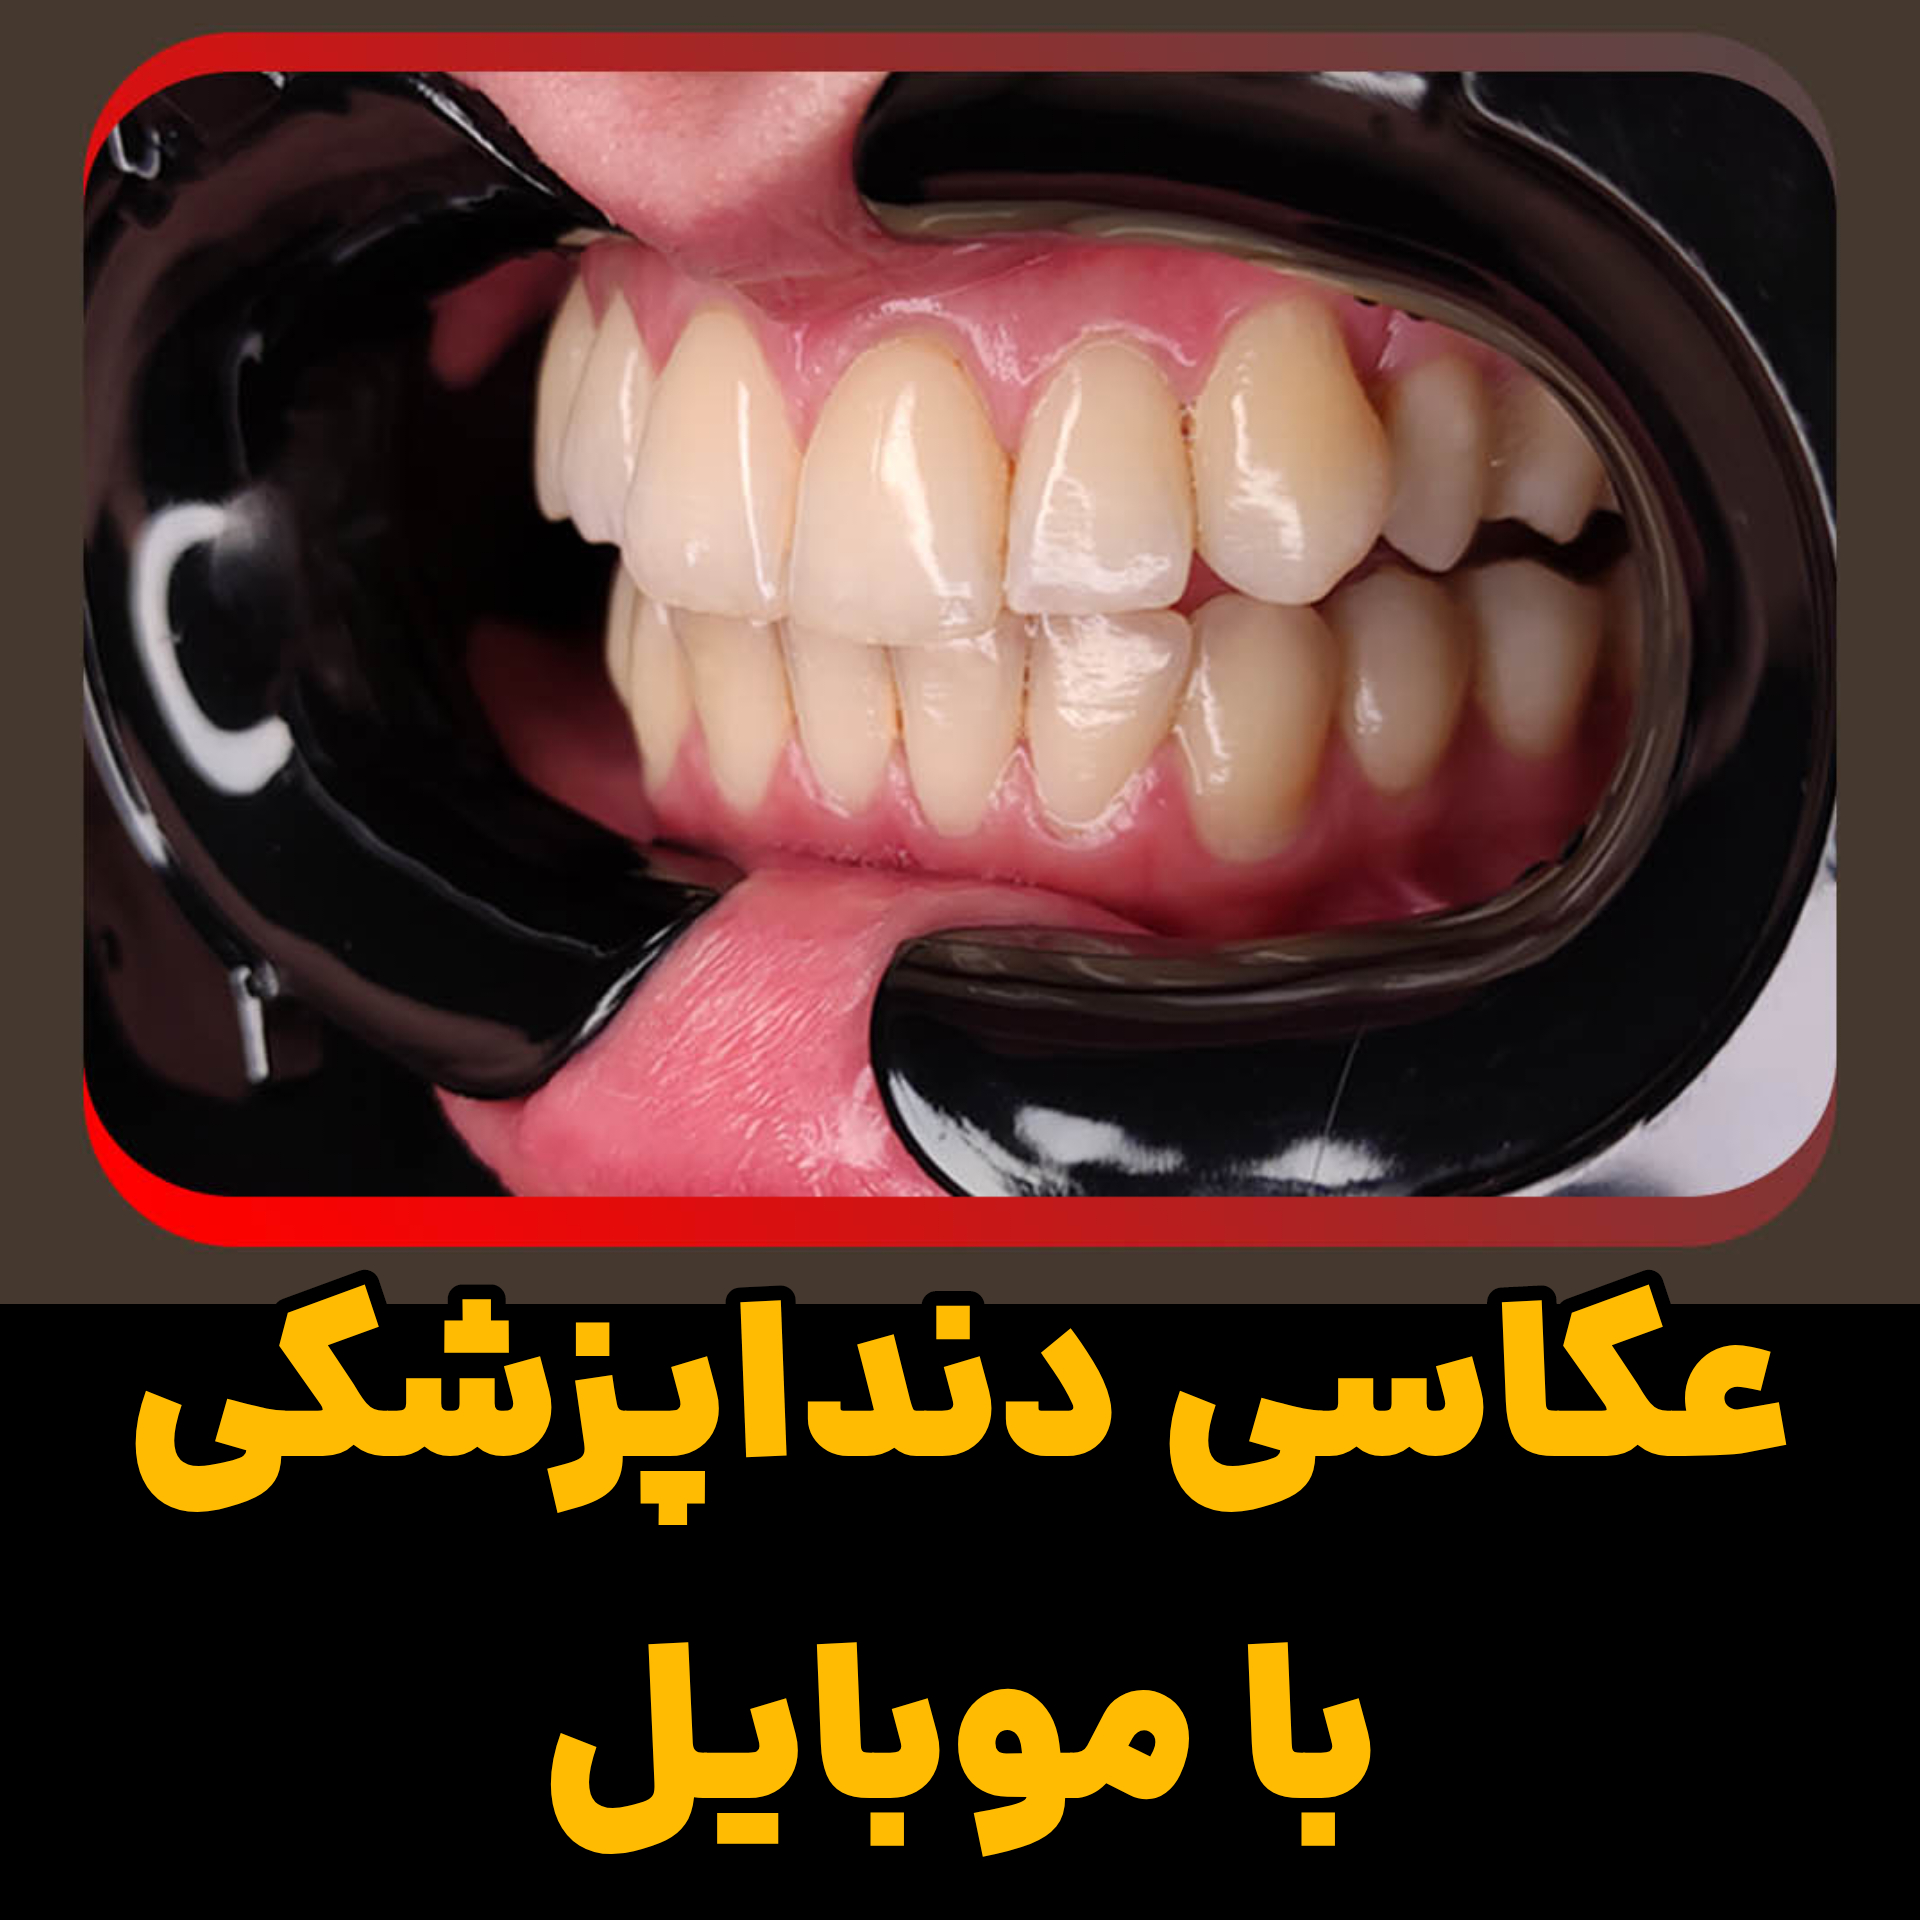 آموزش موبایلگرافی دندانپزشکی